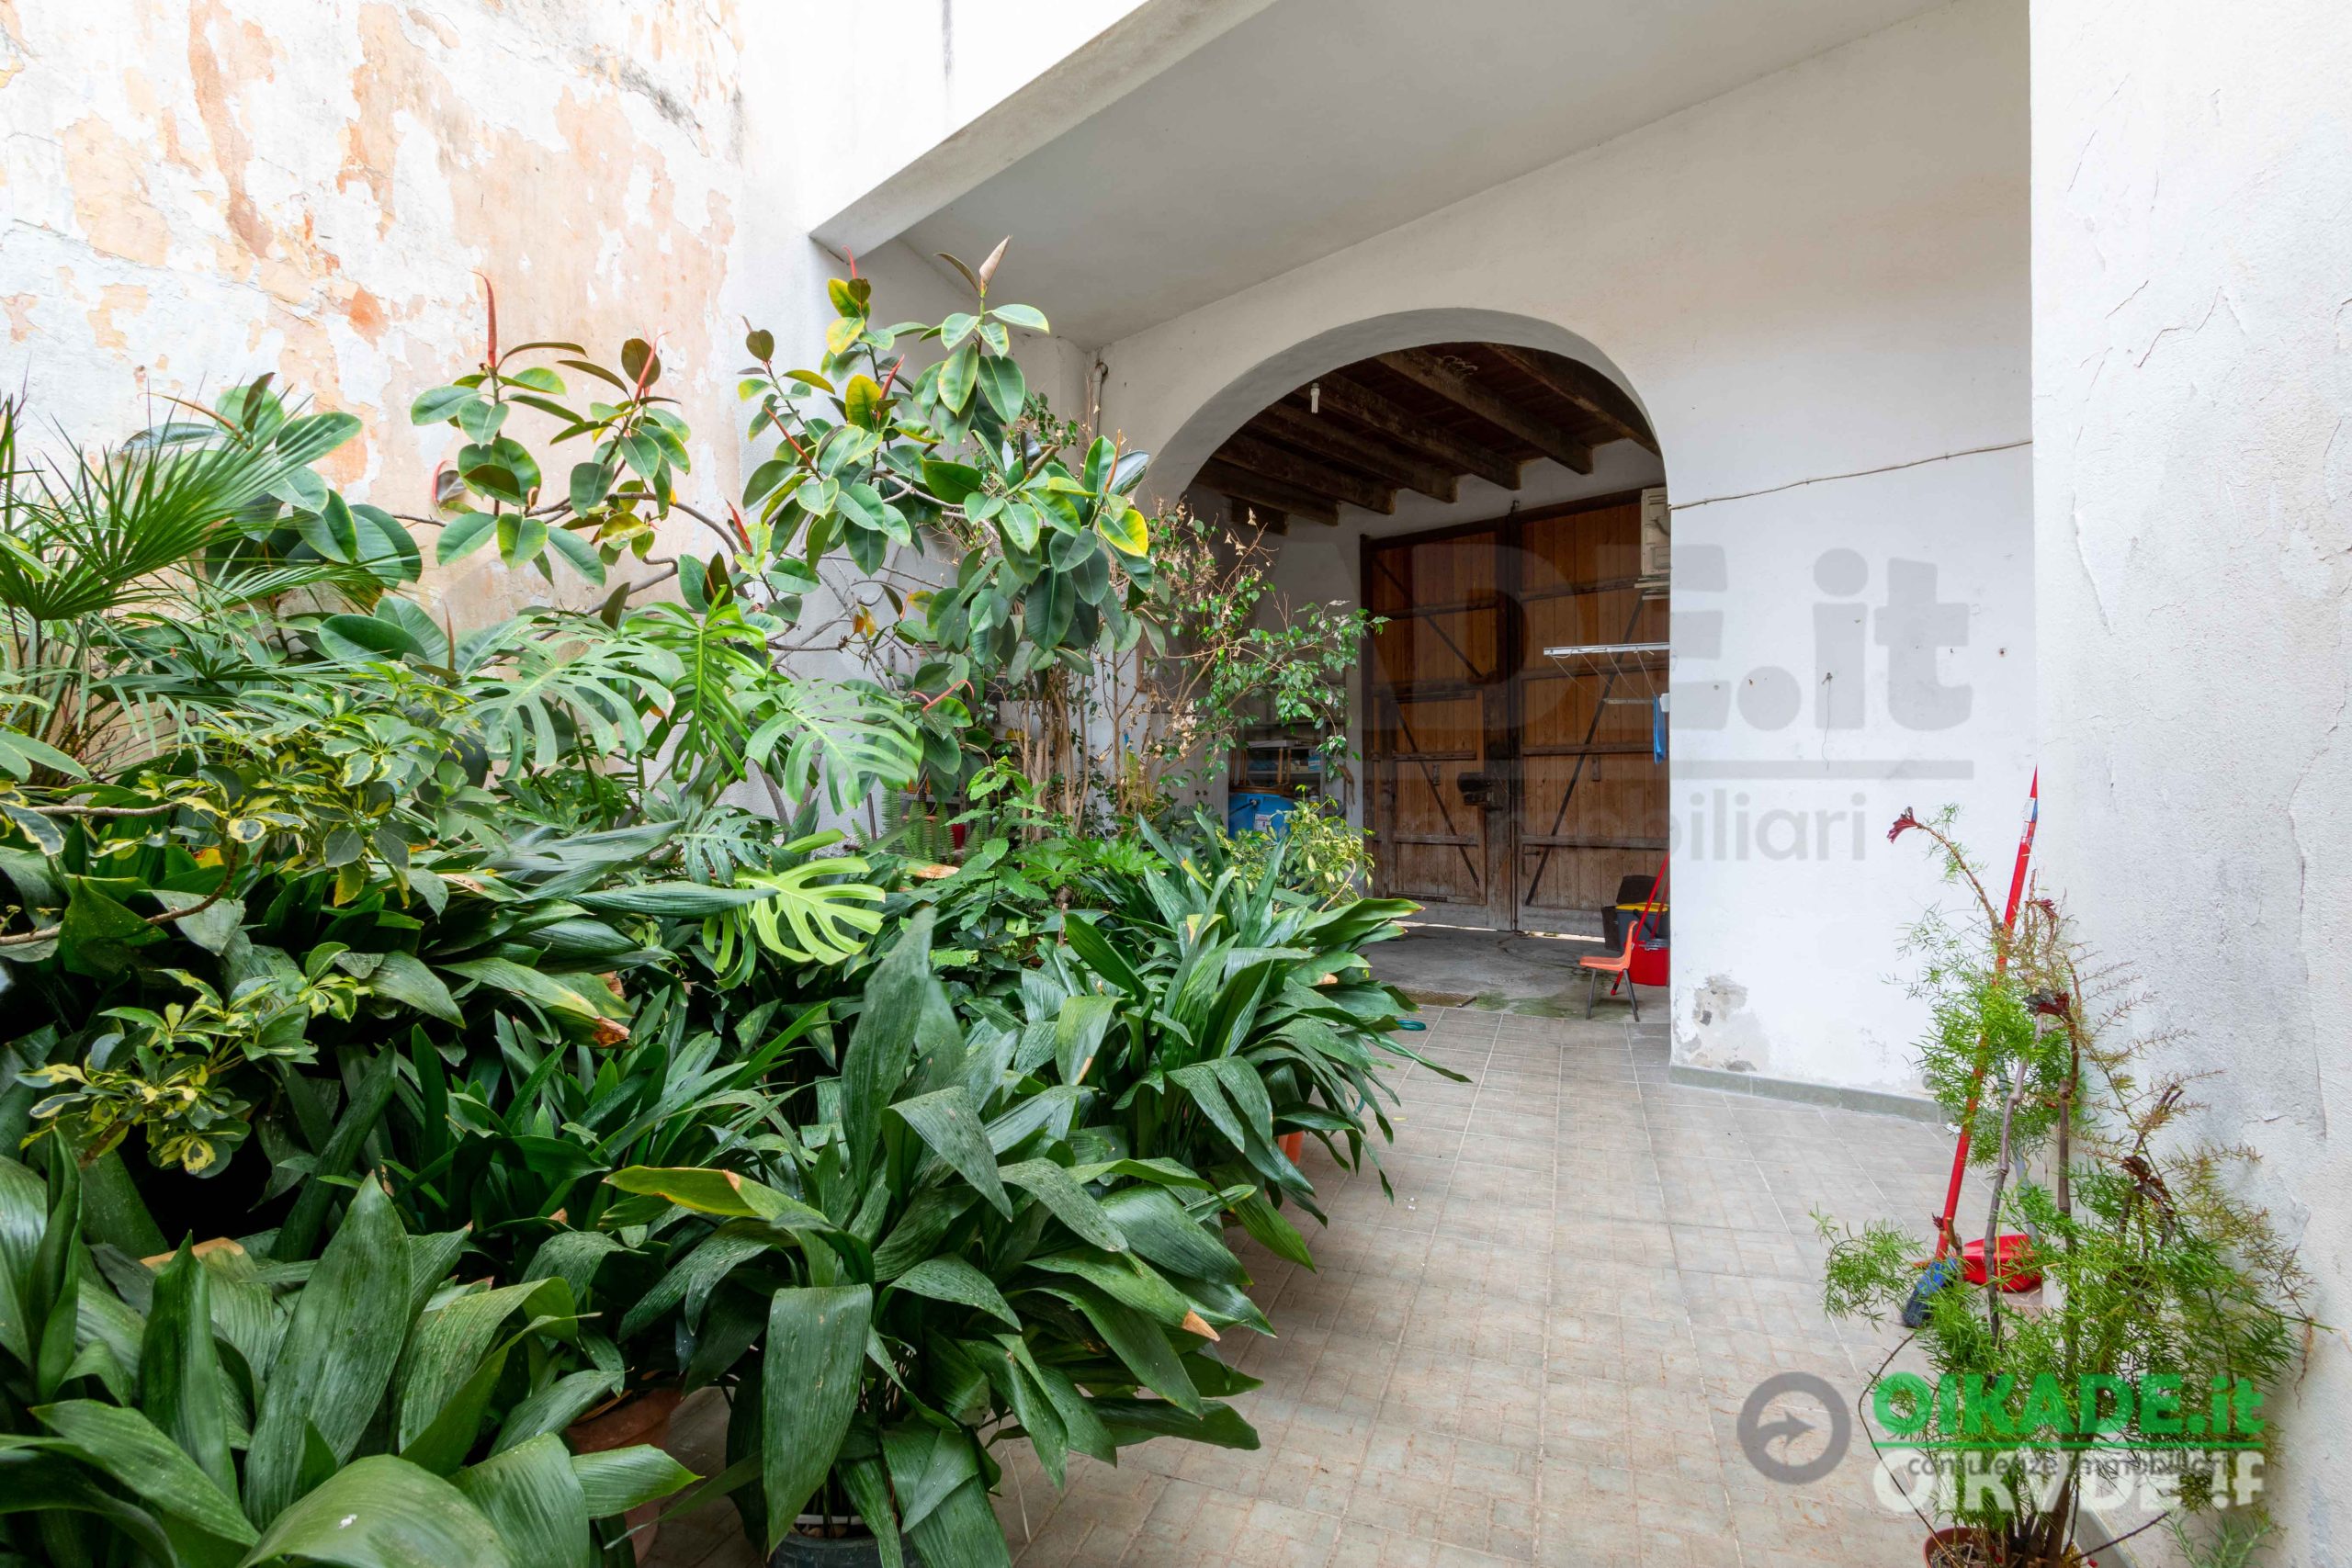 Nuda proprietà di una casa campidanese con giardino a Monserrato